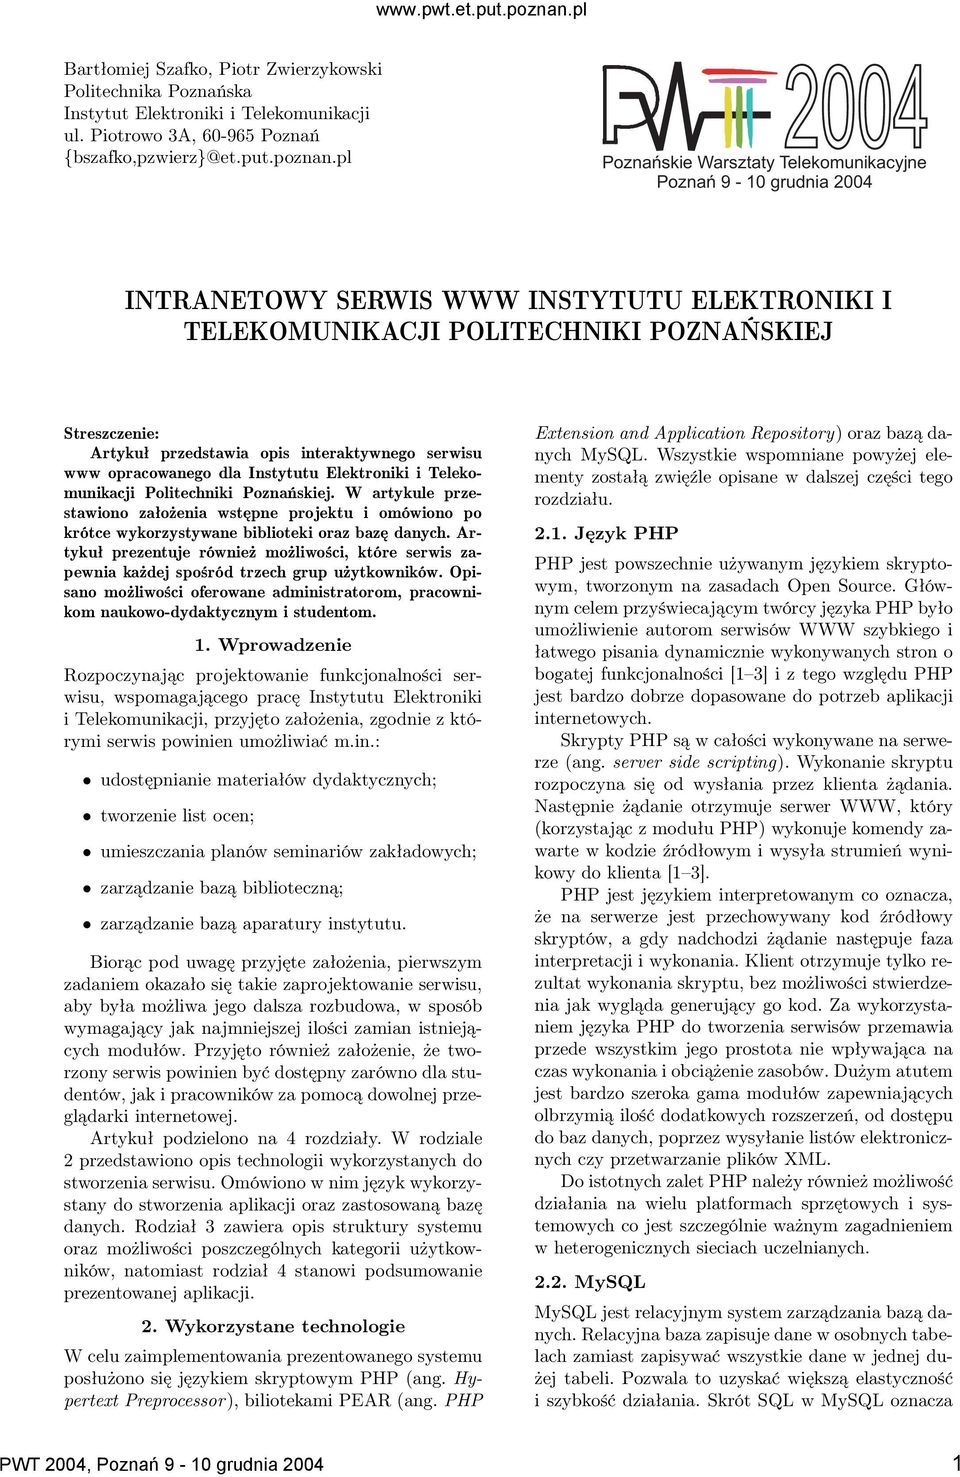 interaktywnego serwisu www opracowanego dla Instytutu Elektroniki i Telekomunikacji Politechniki Poznańskiej.